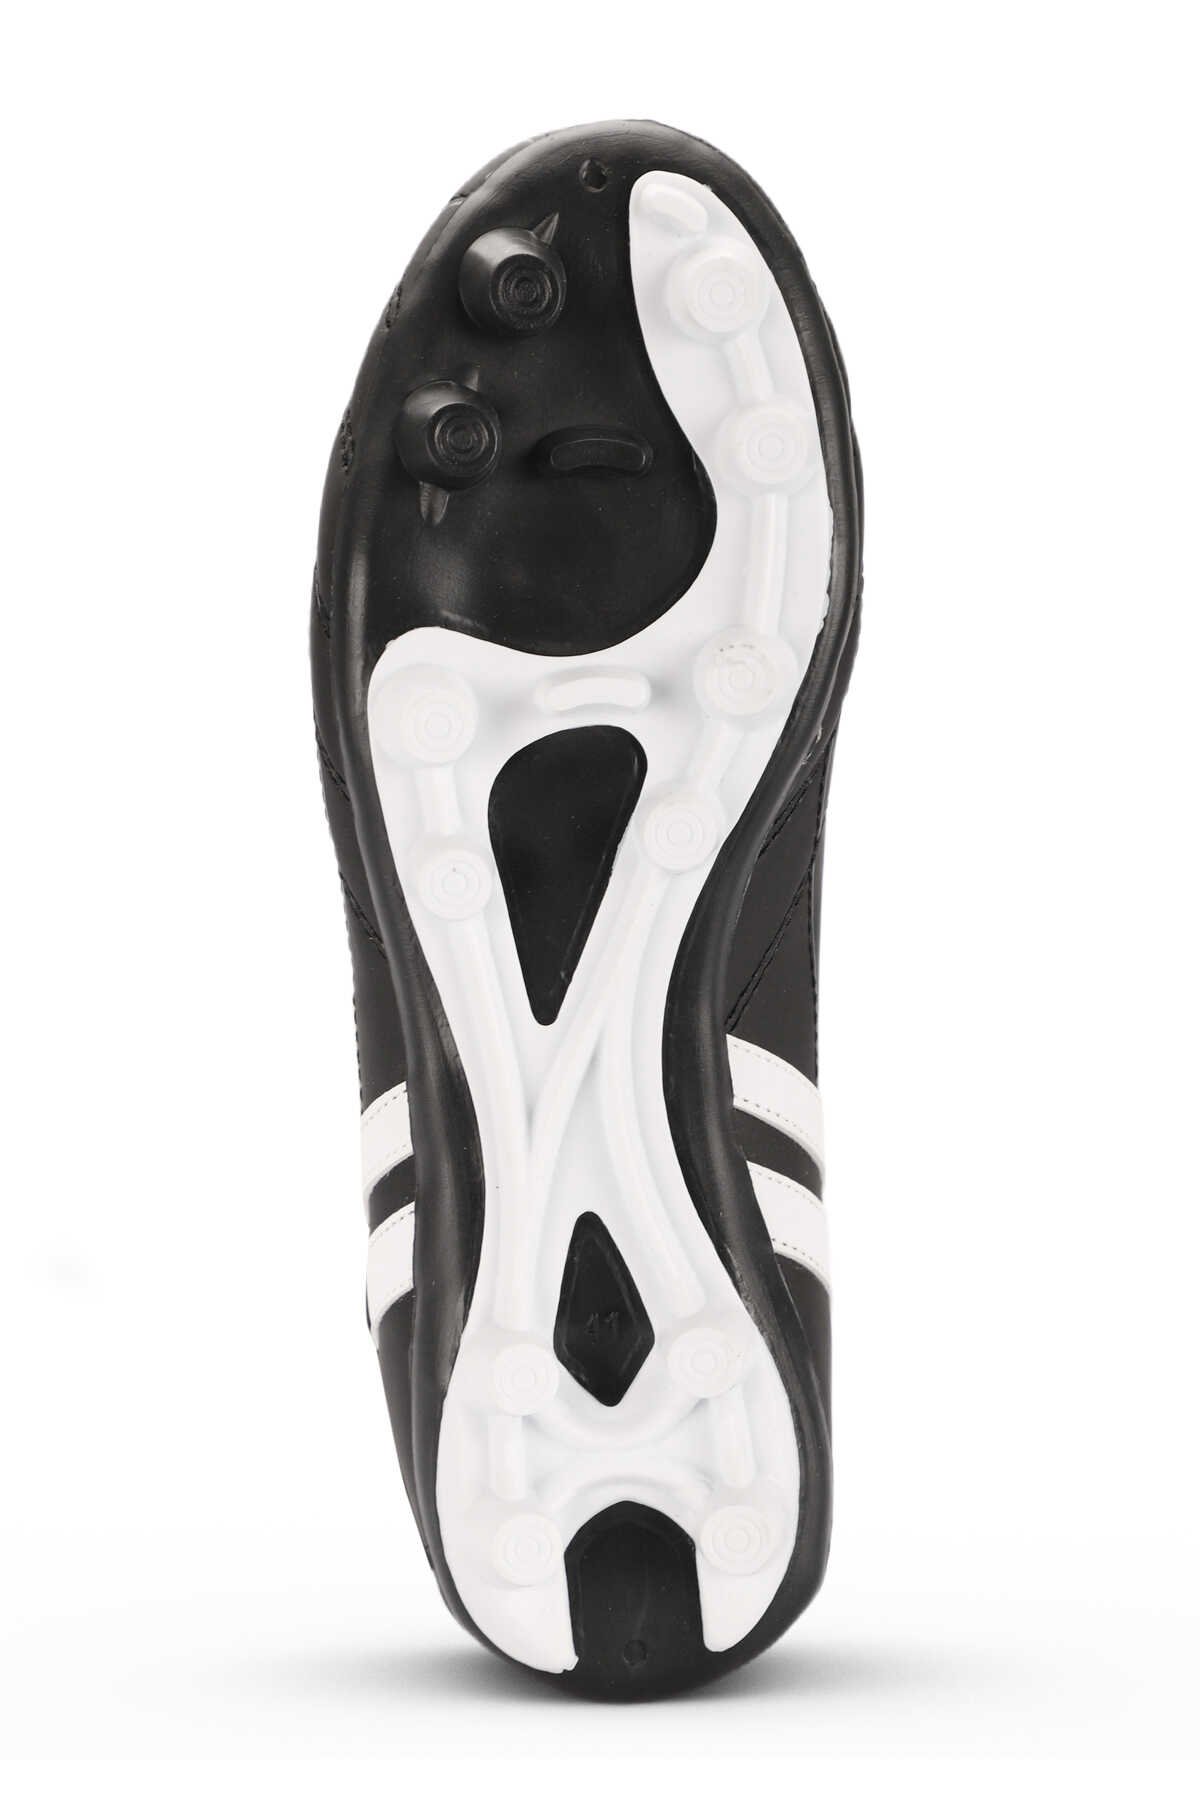 Slazenger HENRIK KR Futbol Erkek Krampon Ayakkabı Siyah / Beyaz